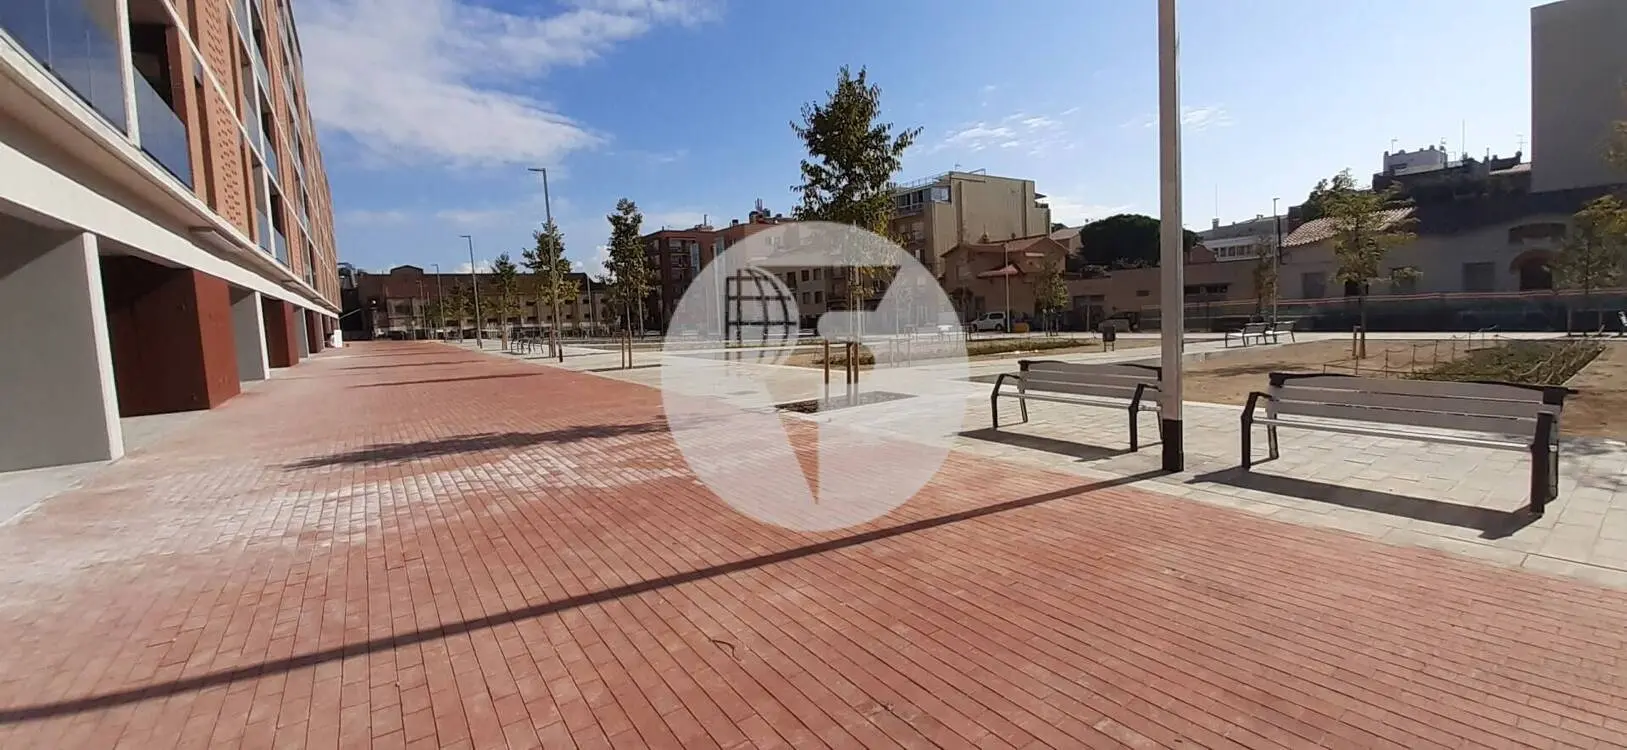 Local comercial d'Obra Nova a Sabadell IE-220759 2